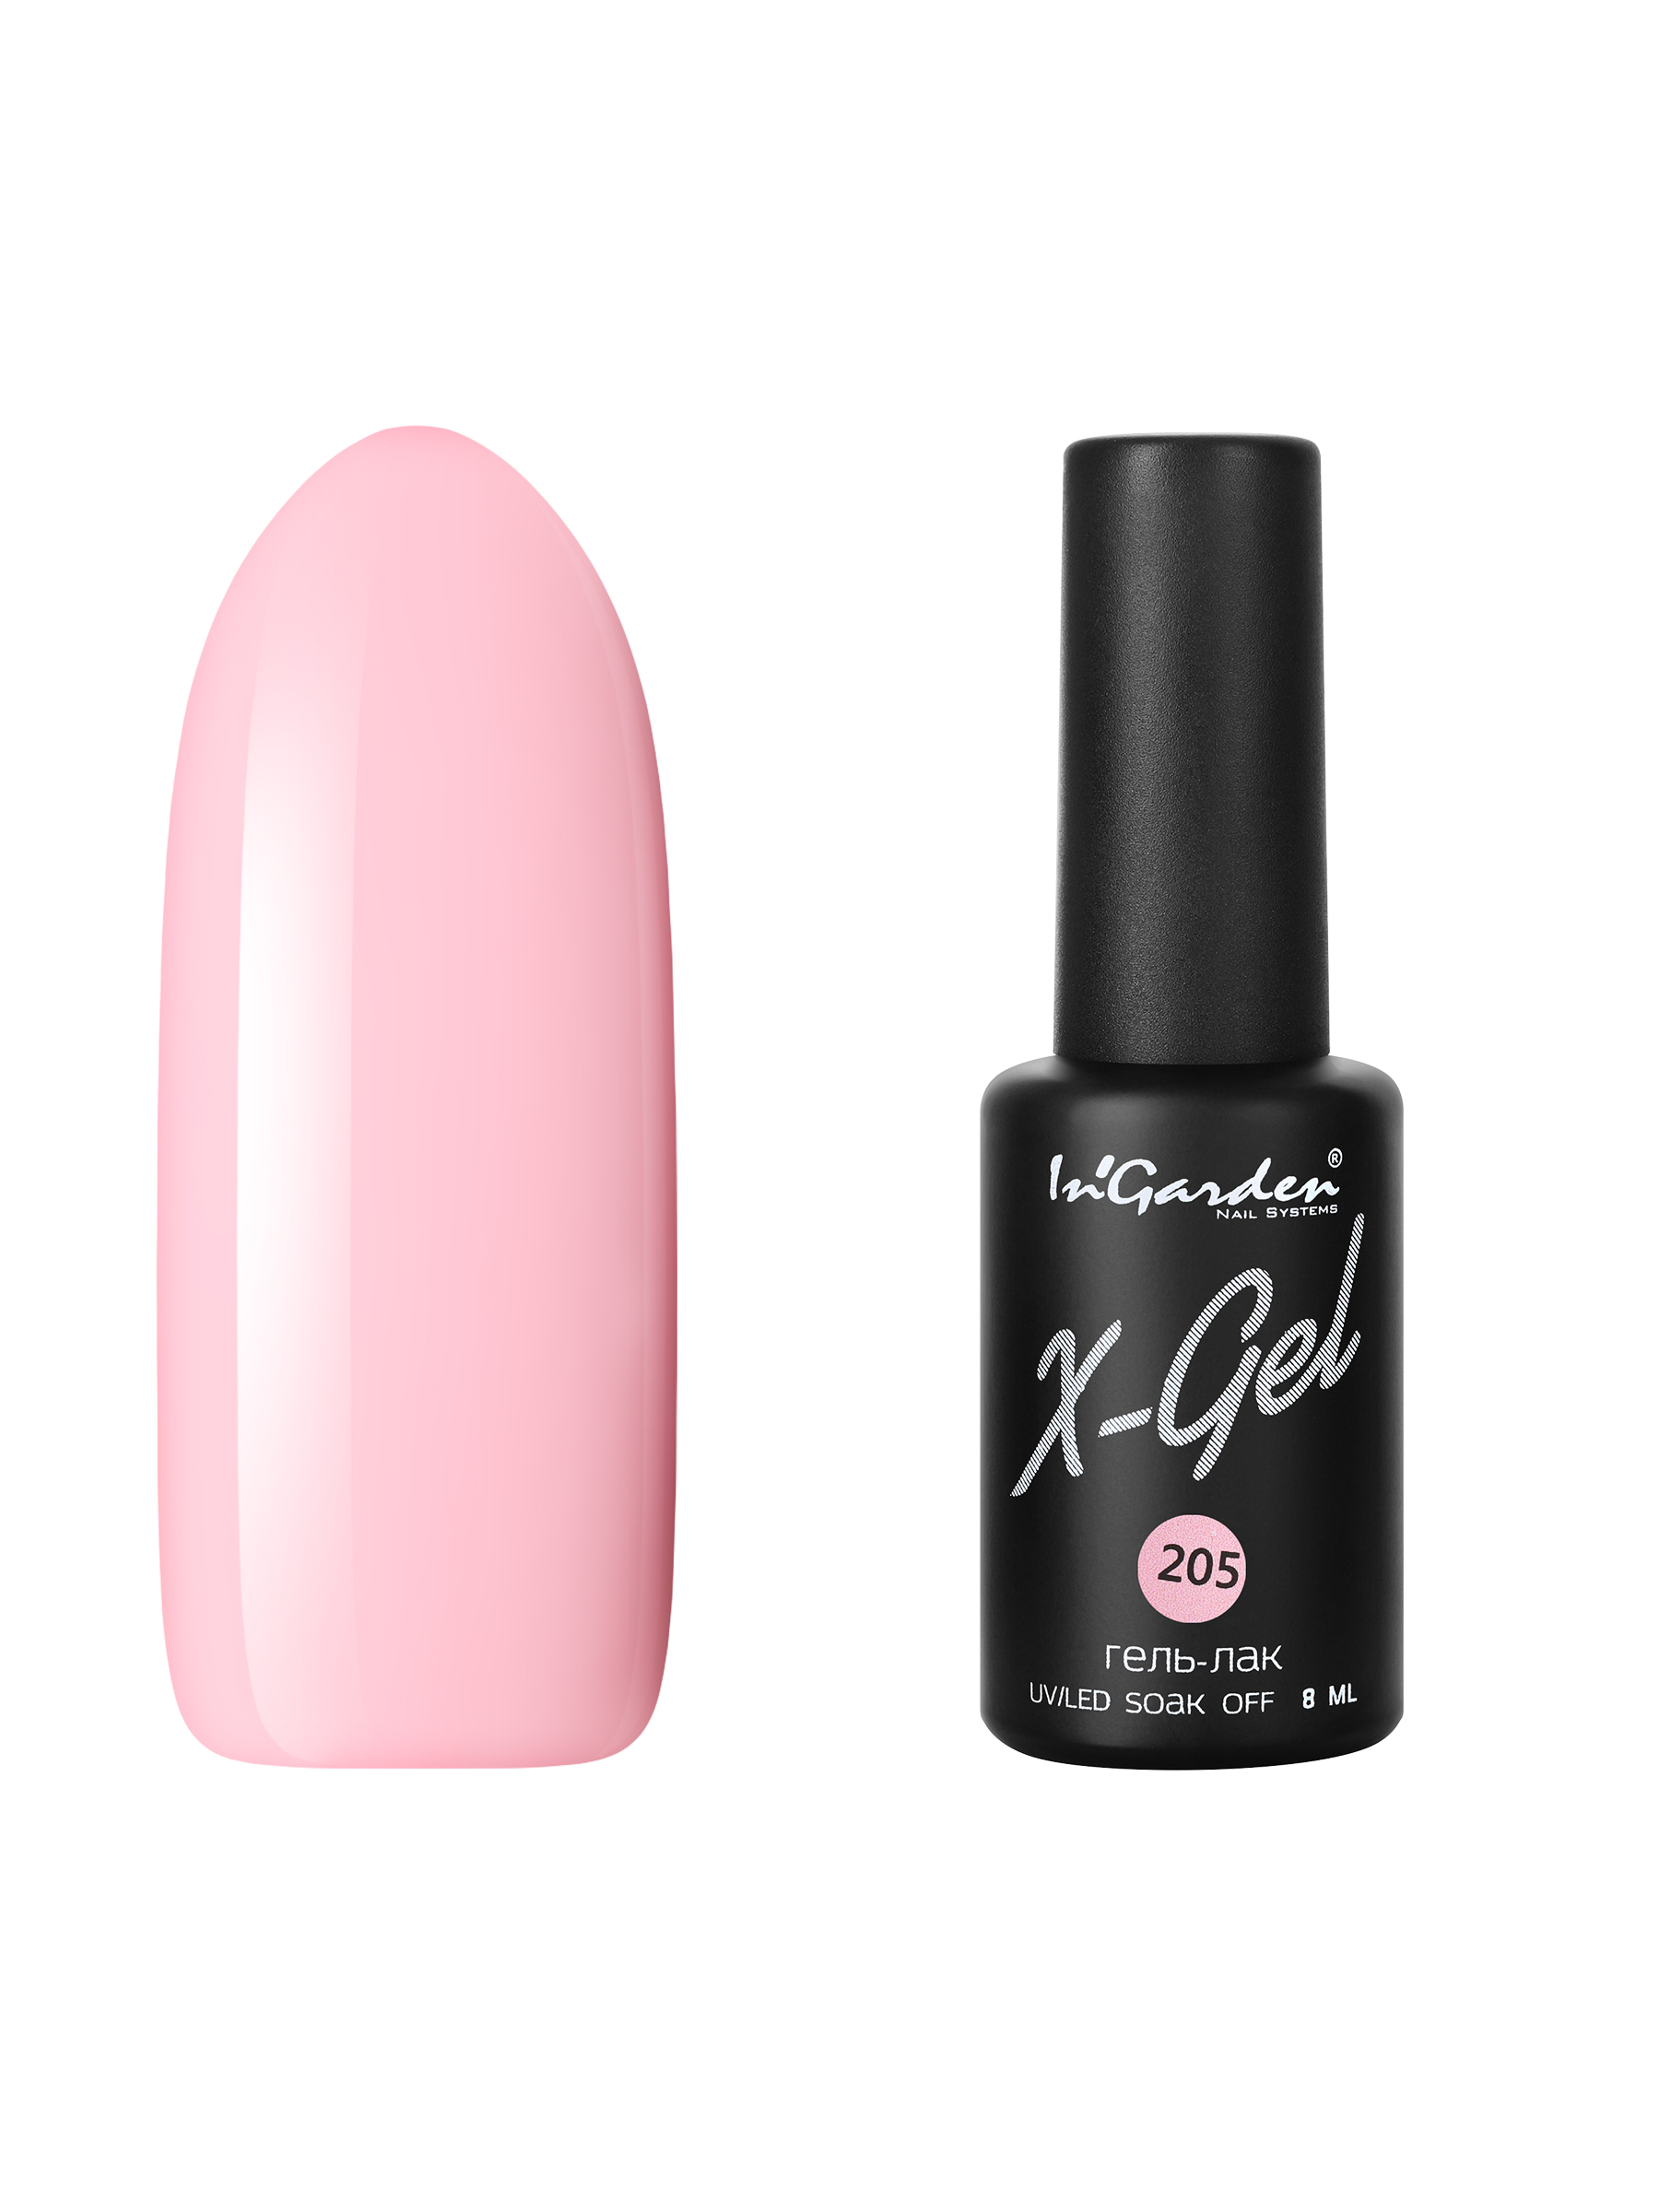 Купить Гель лак для ногтей In’Garden X-Gel N° 205 молочно-розовый плотный 8 мл, In'Garden